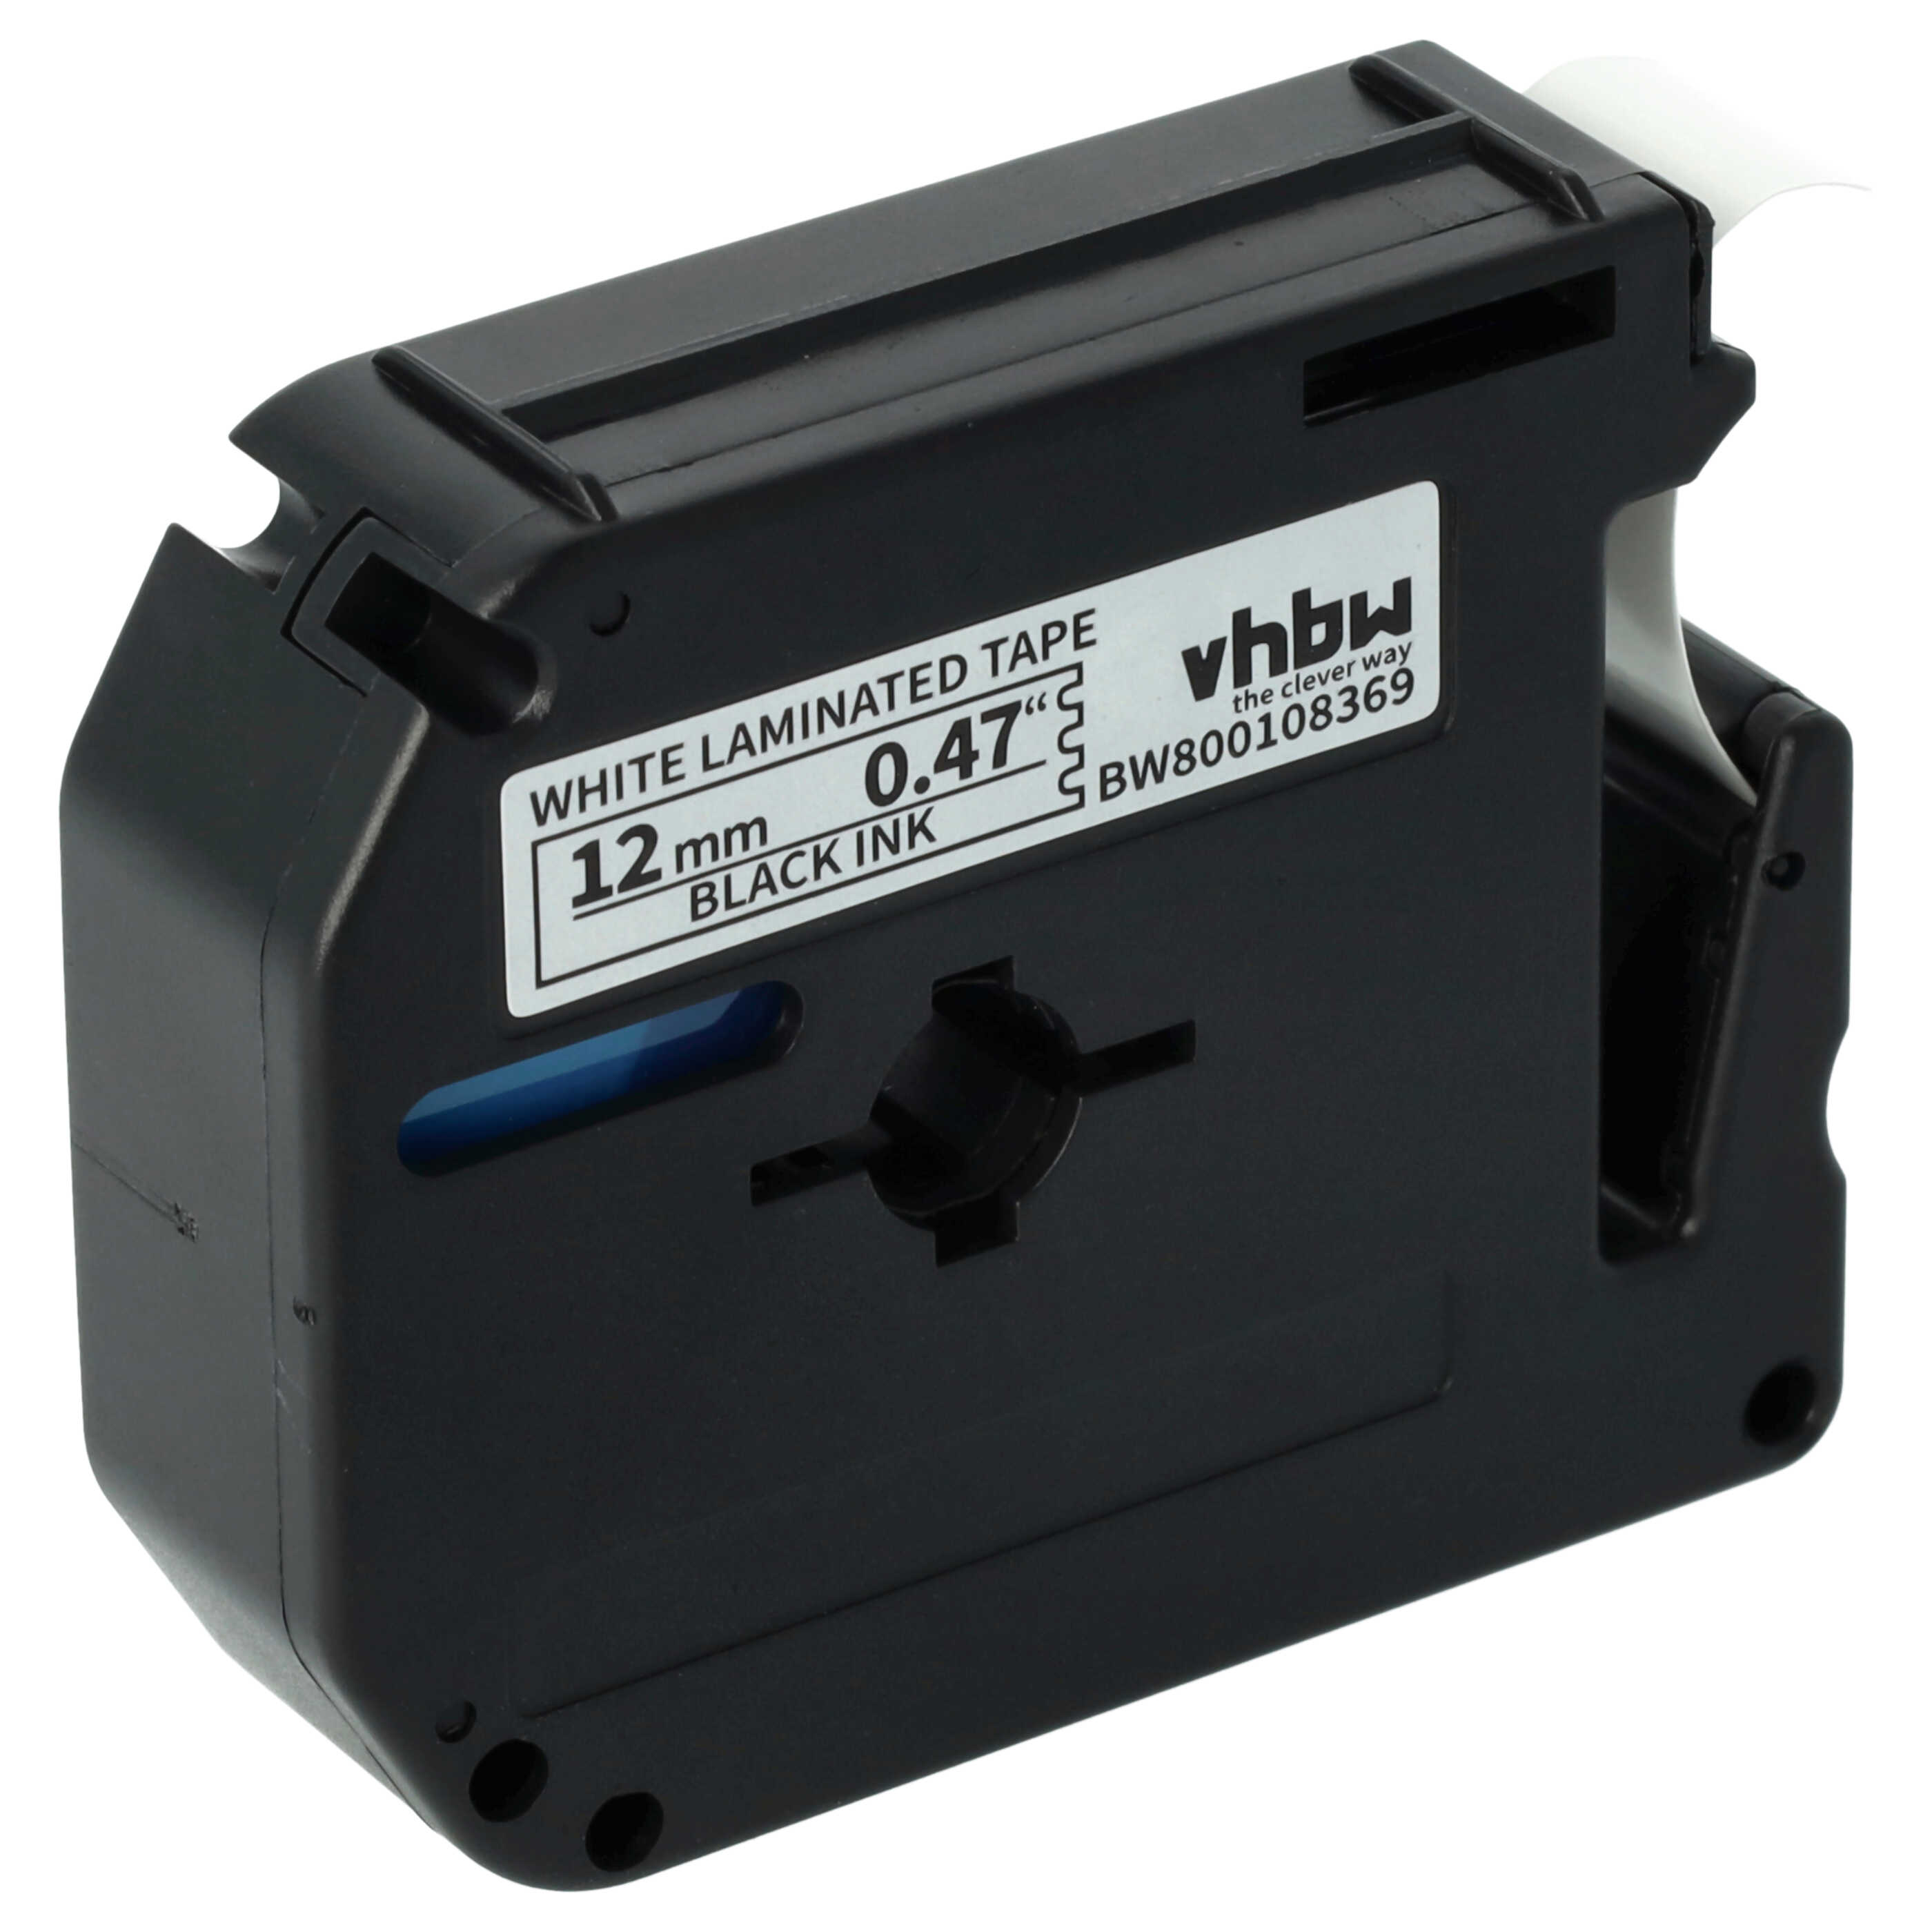 Cassetta nastro sostituisce Brother M-K231 per etichettatrice Brother 12mm nero su bianco